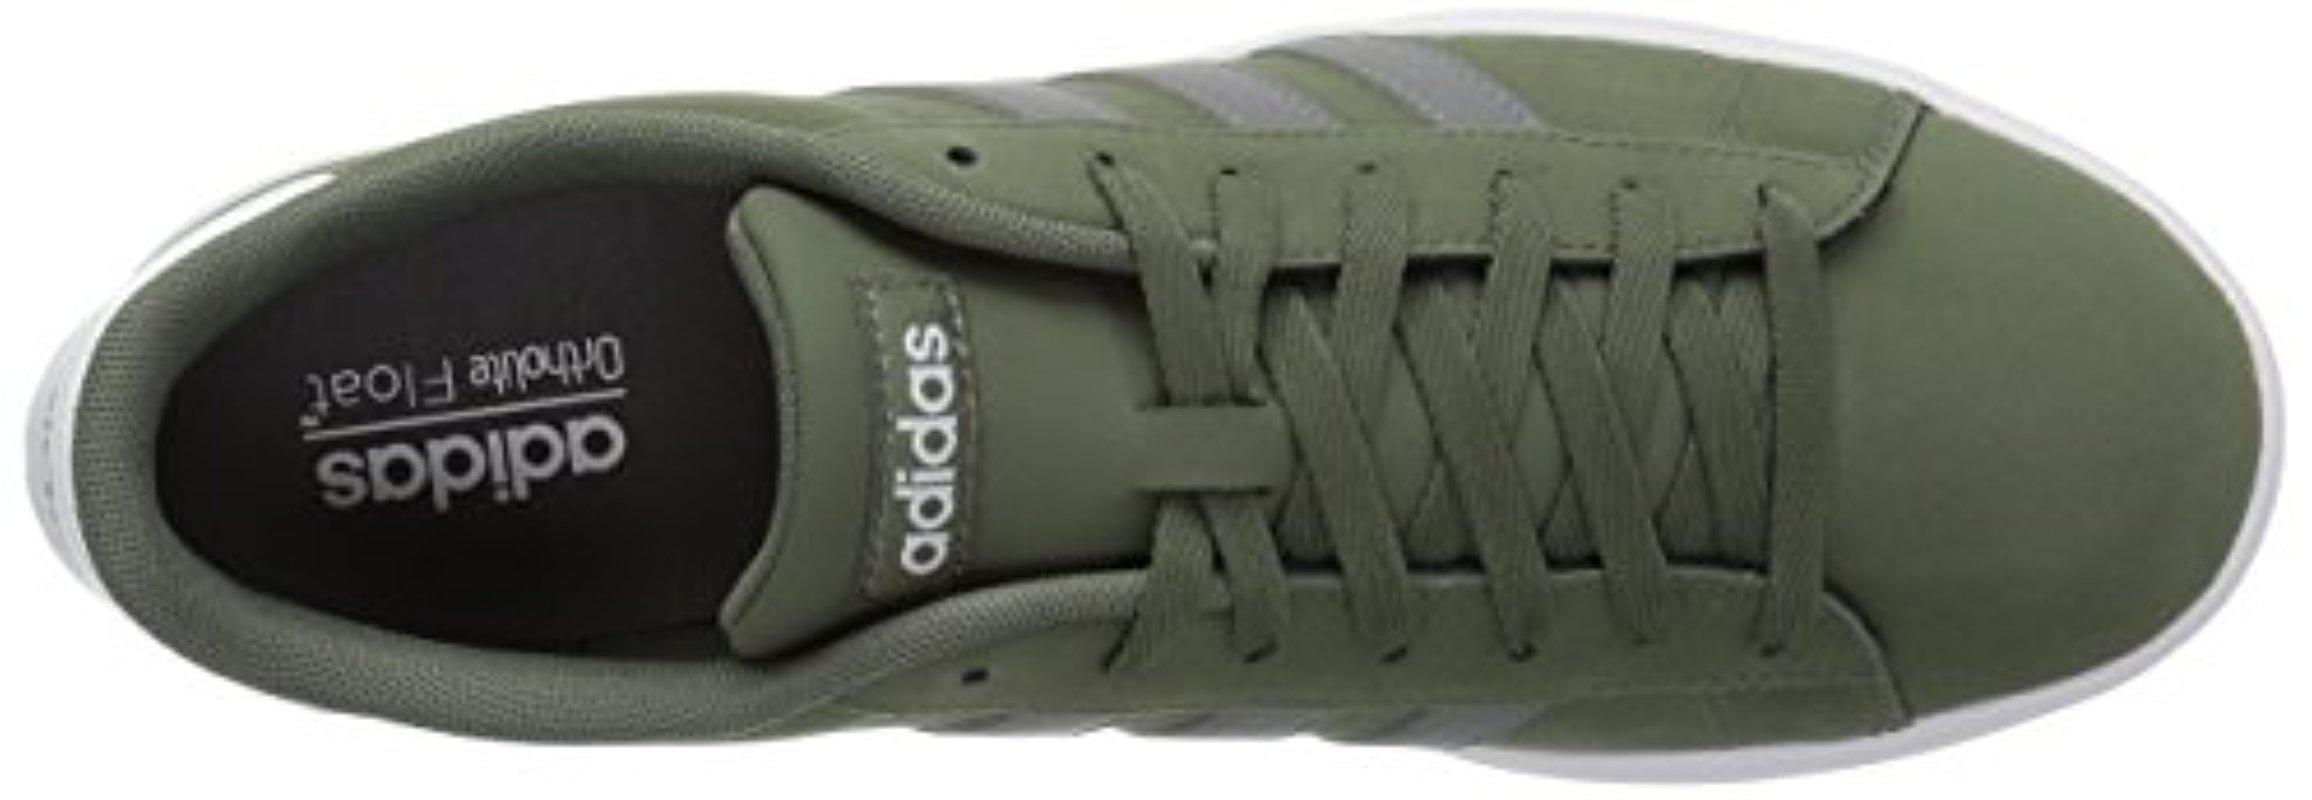 adidas daily 2.0 green